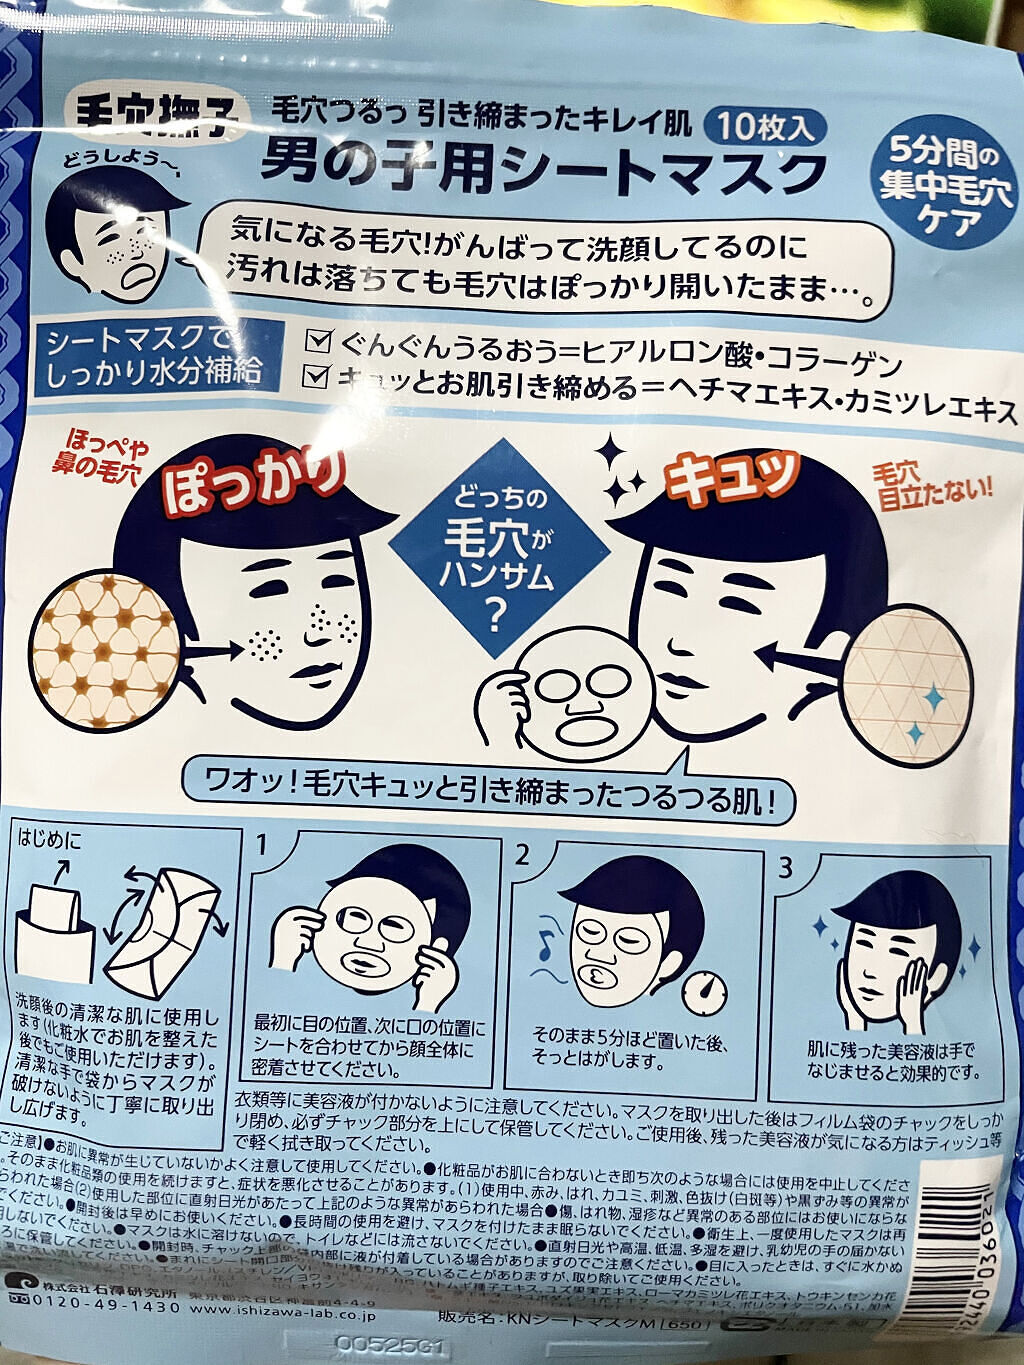 毛穴撫子 男の子用シートマスク 10枚入 2個 石澤研究所 買い誠実